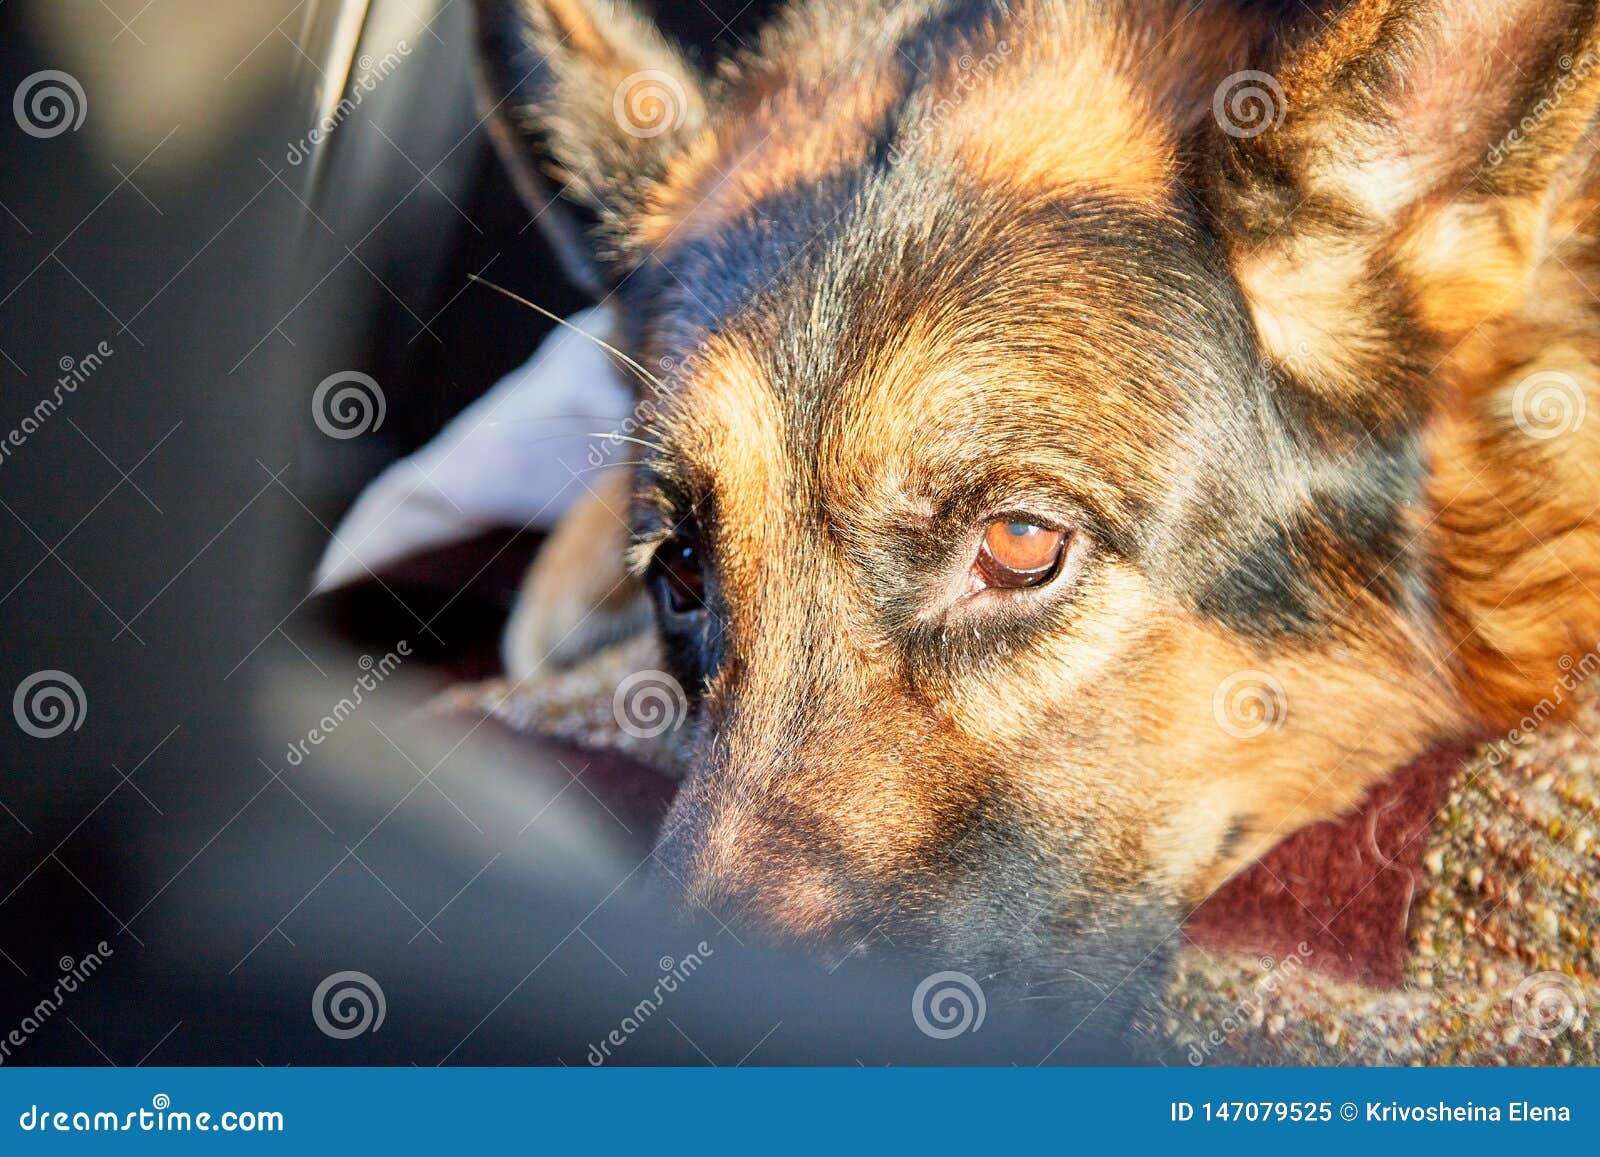 German Shepherd Dog Sleeping on the Rug in the Room Stock Image - Image ...